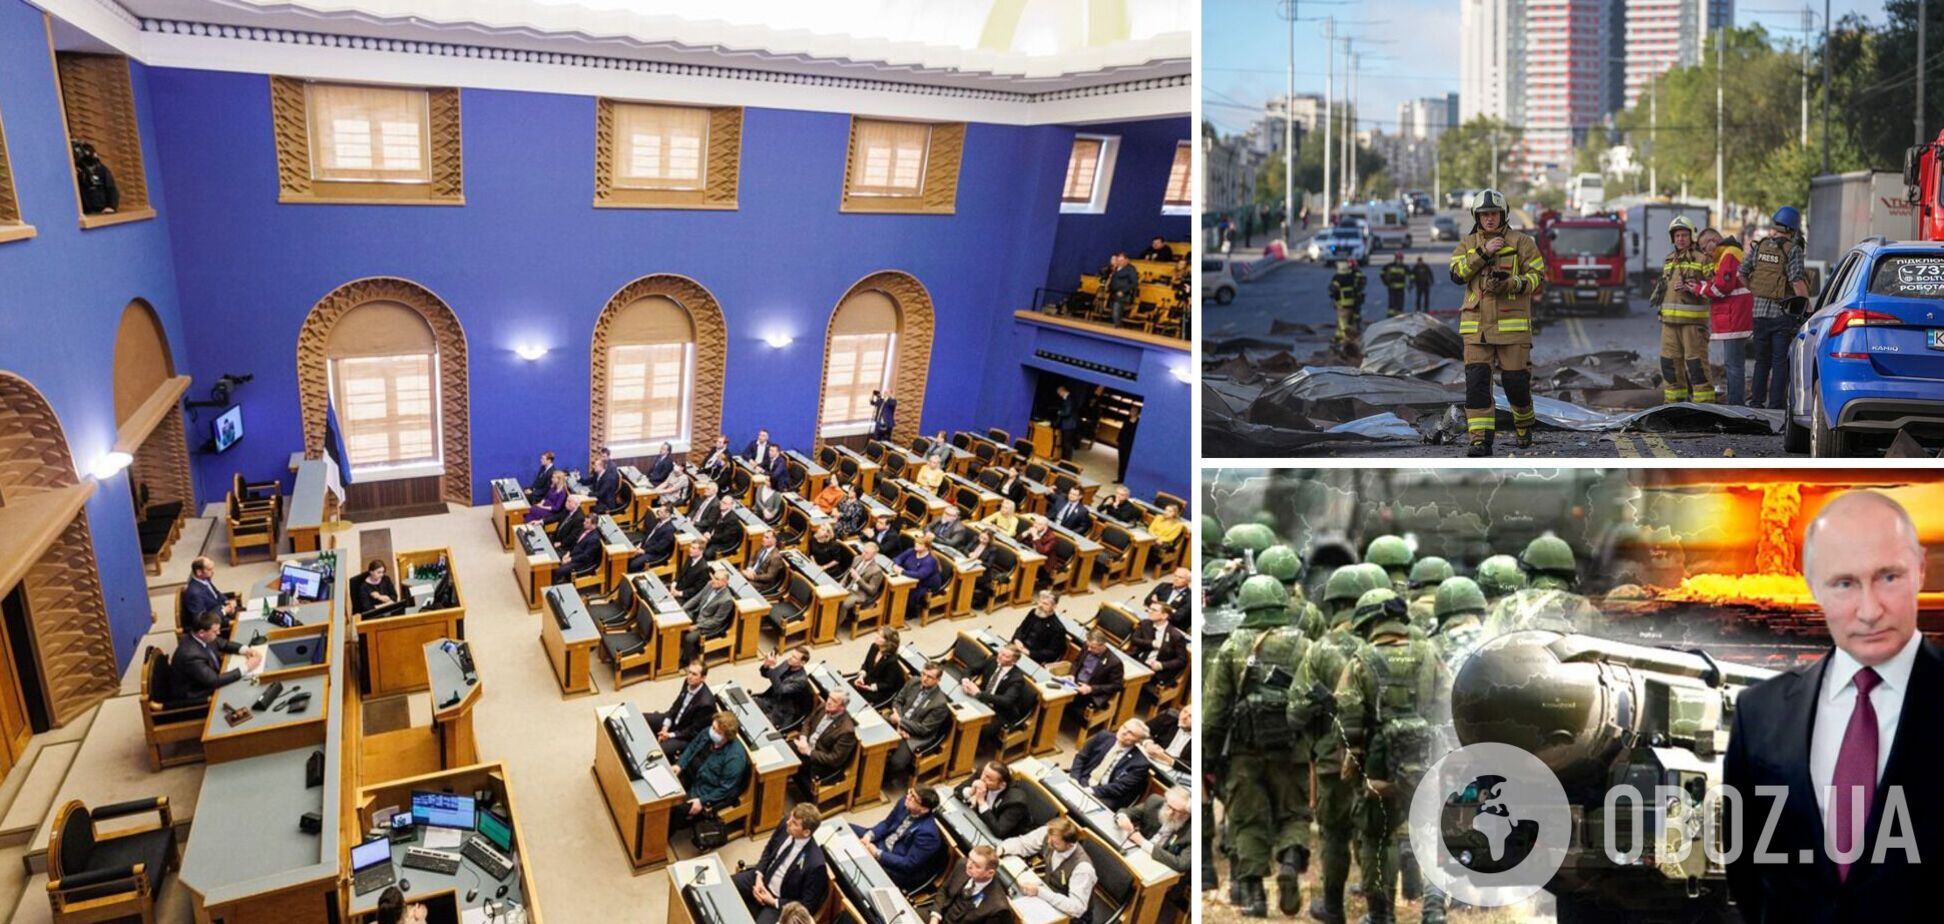 Парламент Эстонии признал российский режим террористическим и осудил аннексию территорий Украины